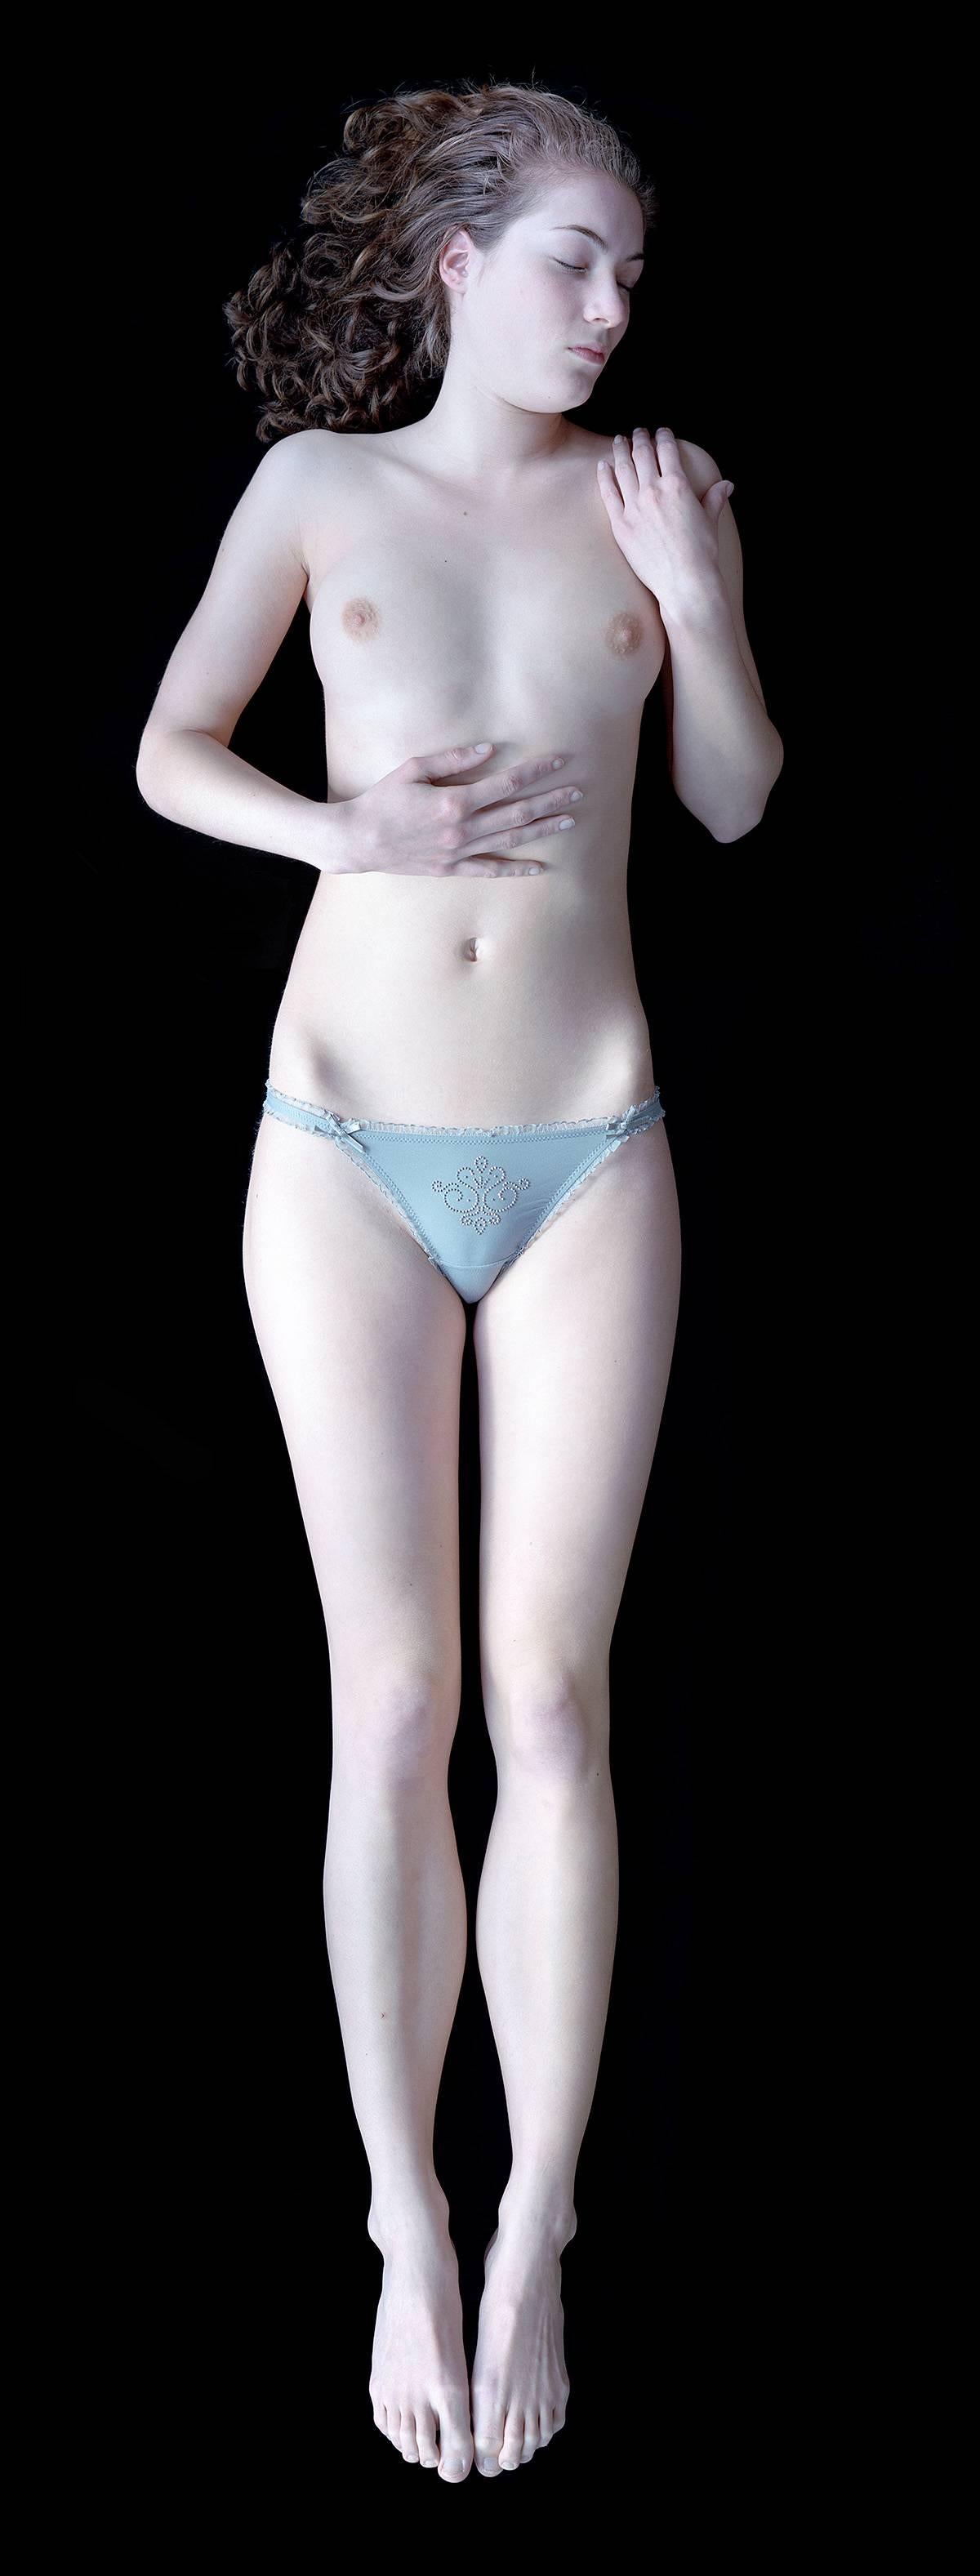 Carla van de Puttelaar Nude Photograph - 2008_23 – The Cranach Series